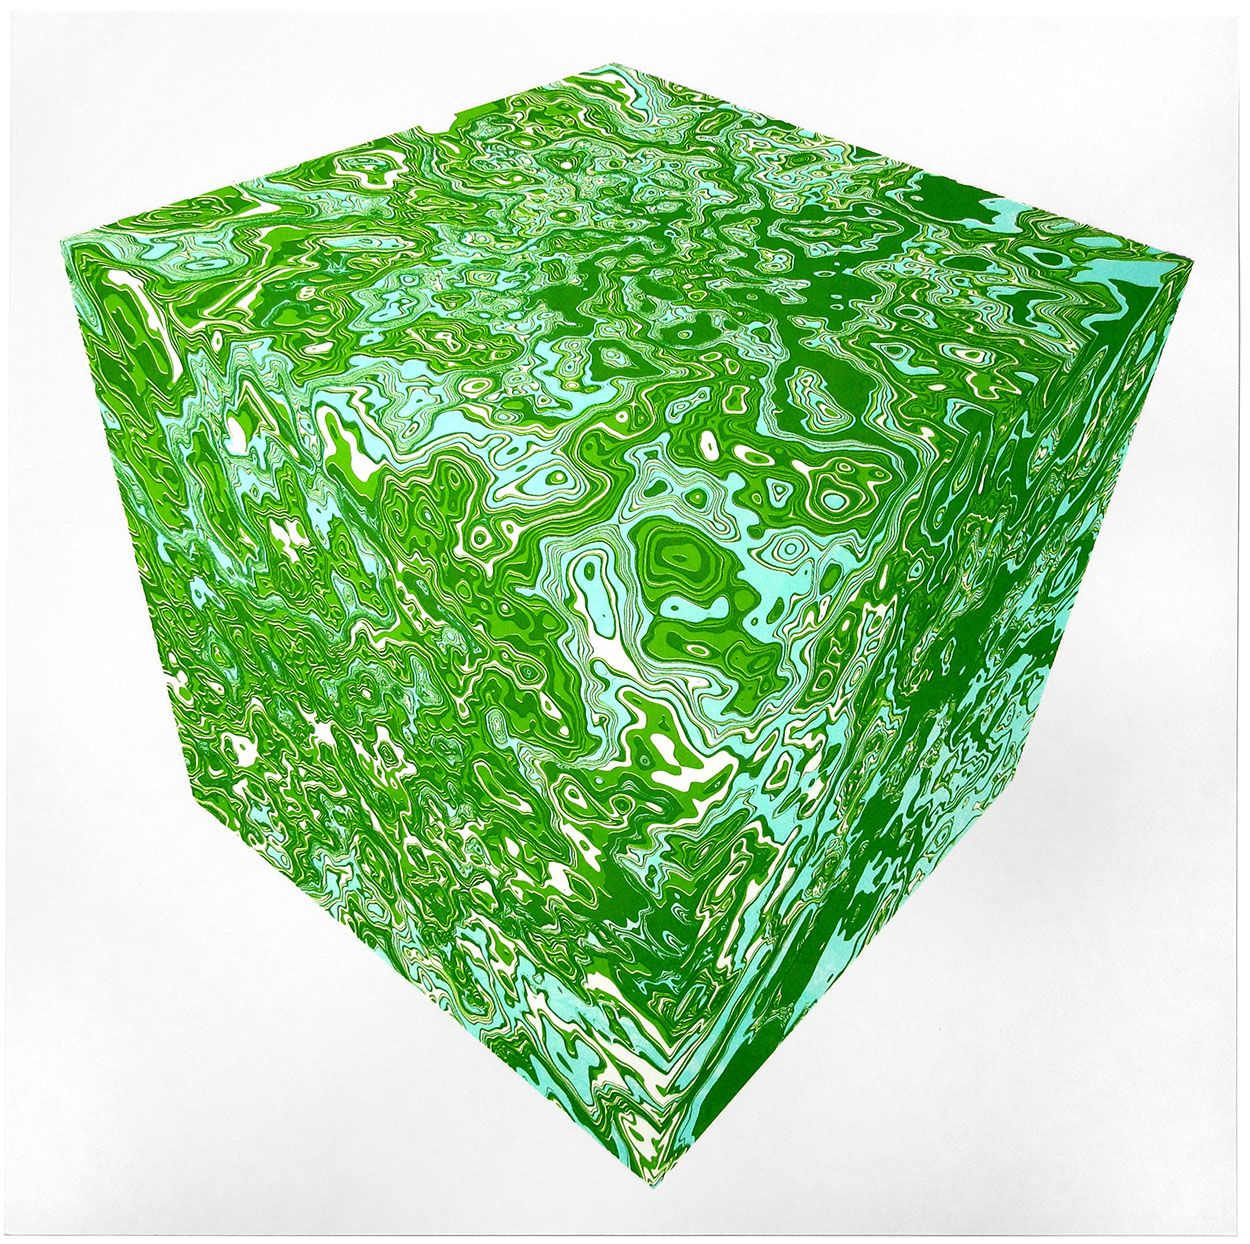 Cube by Chris Keegan